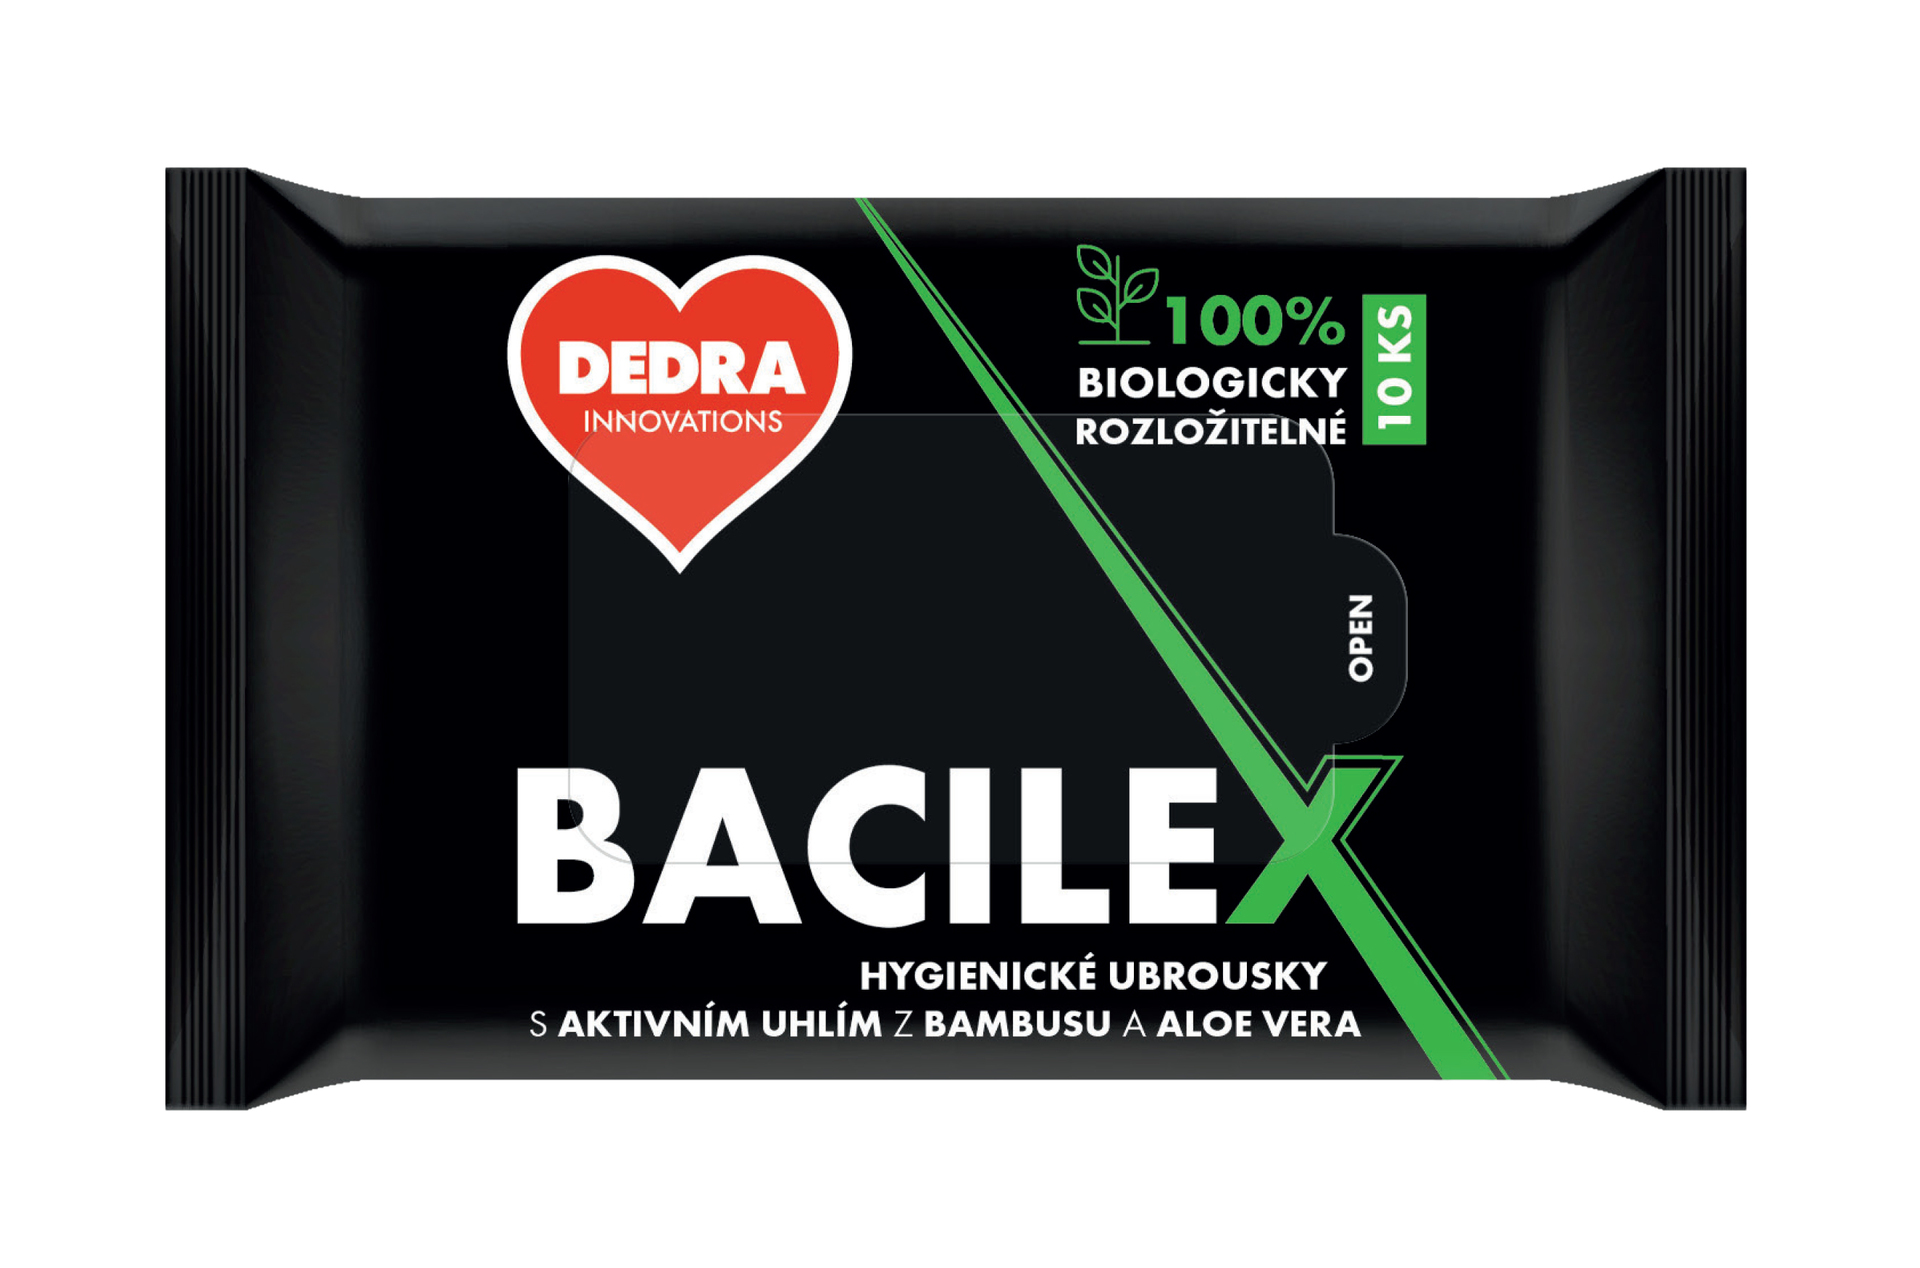 10 szt. nawilane chusteczki higieniczne BACILEX(R) z aktywnym wglem z bambusa oraz Aloe Vera